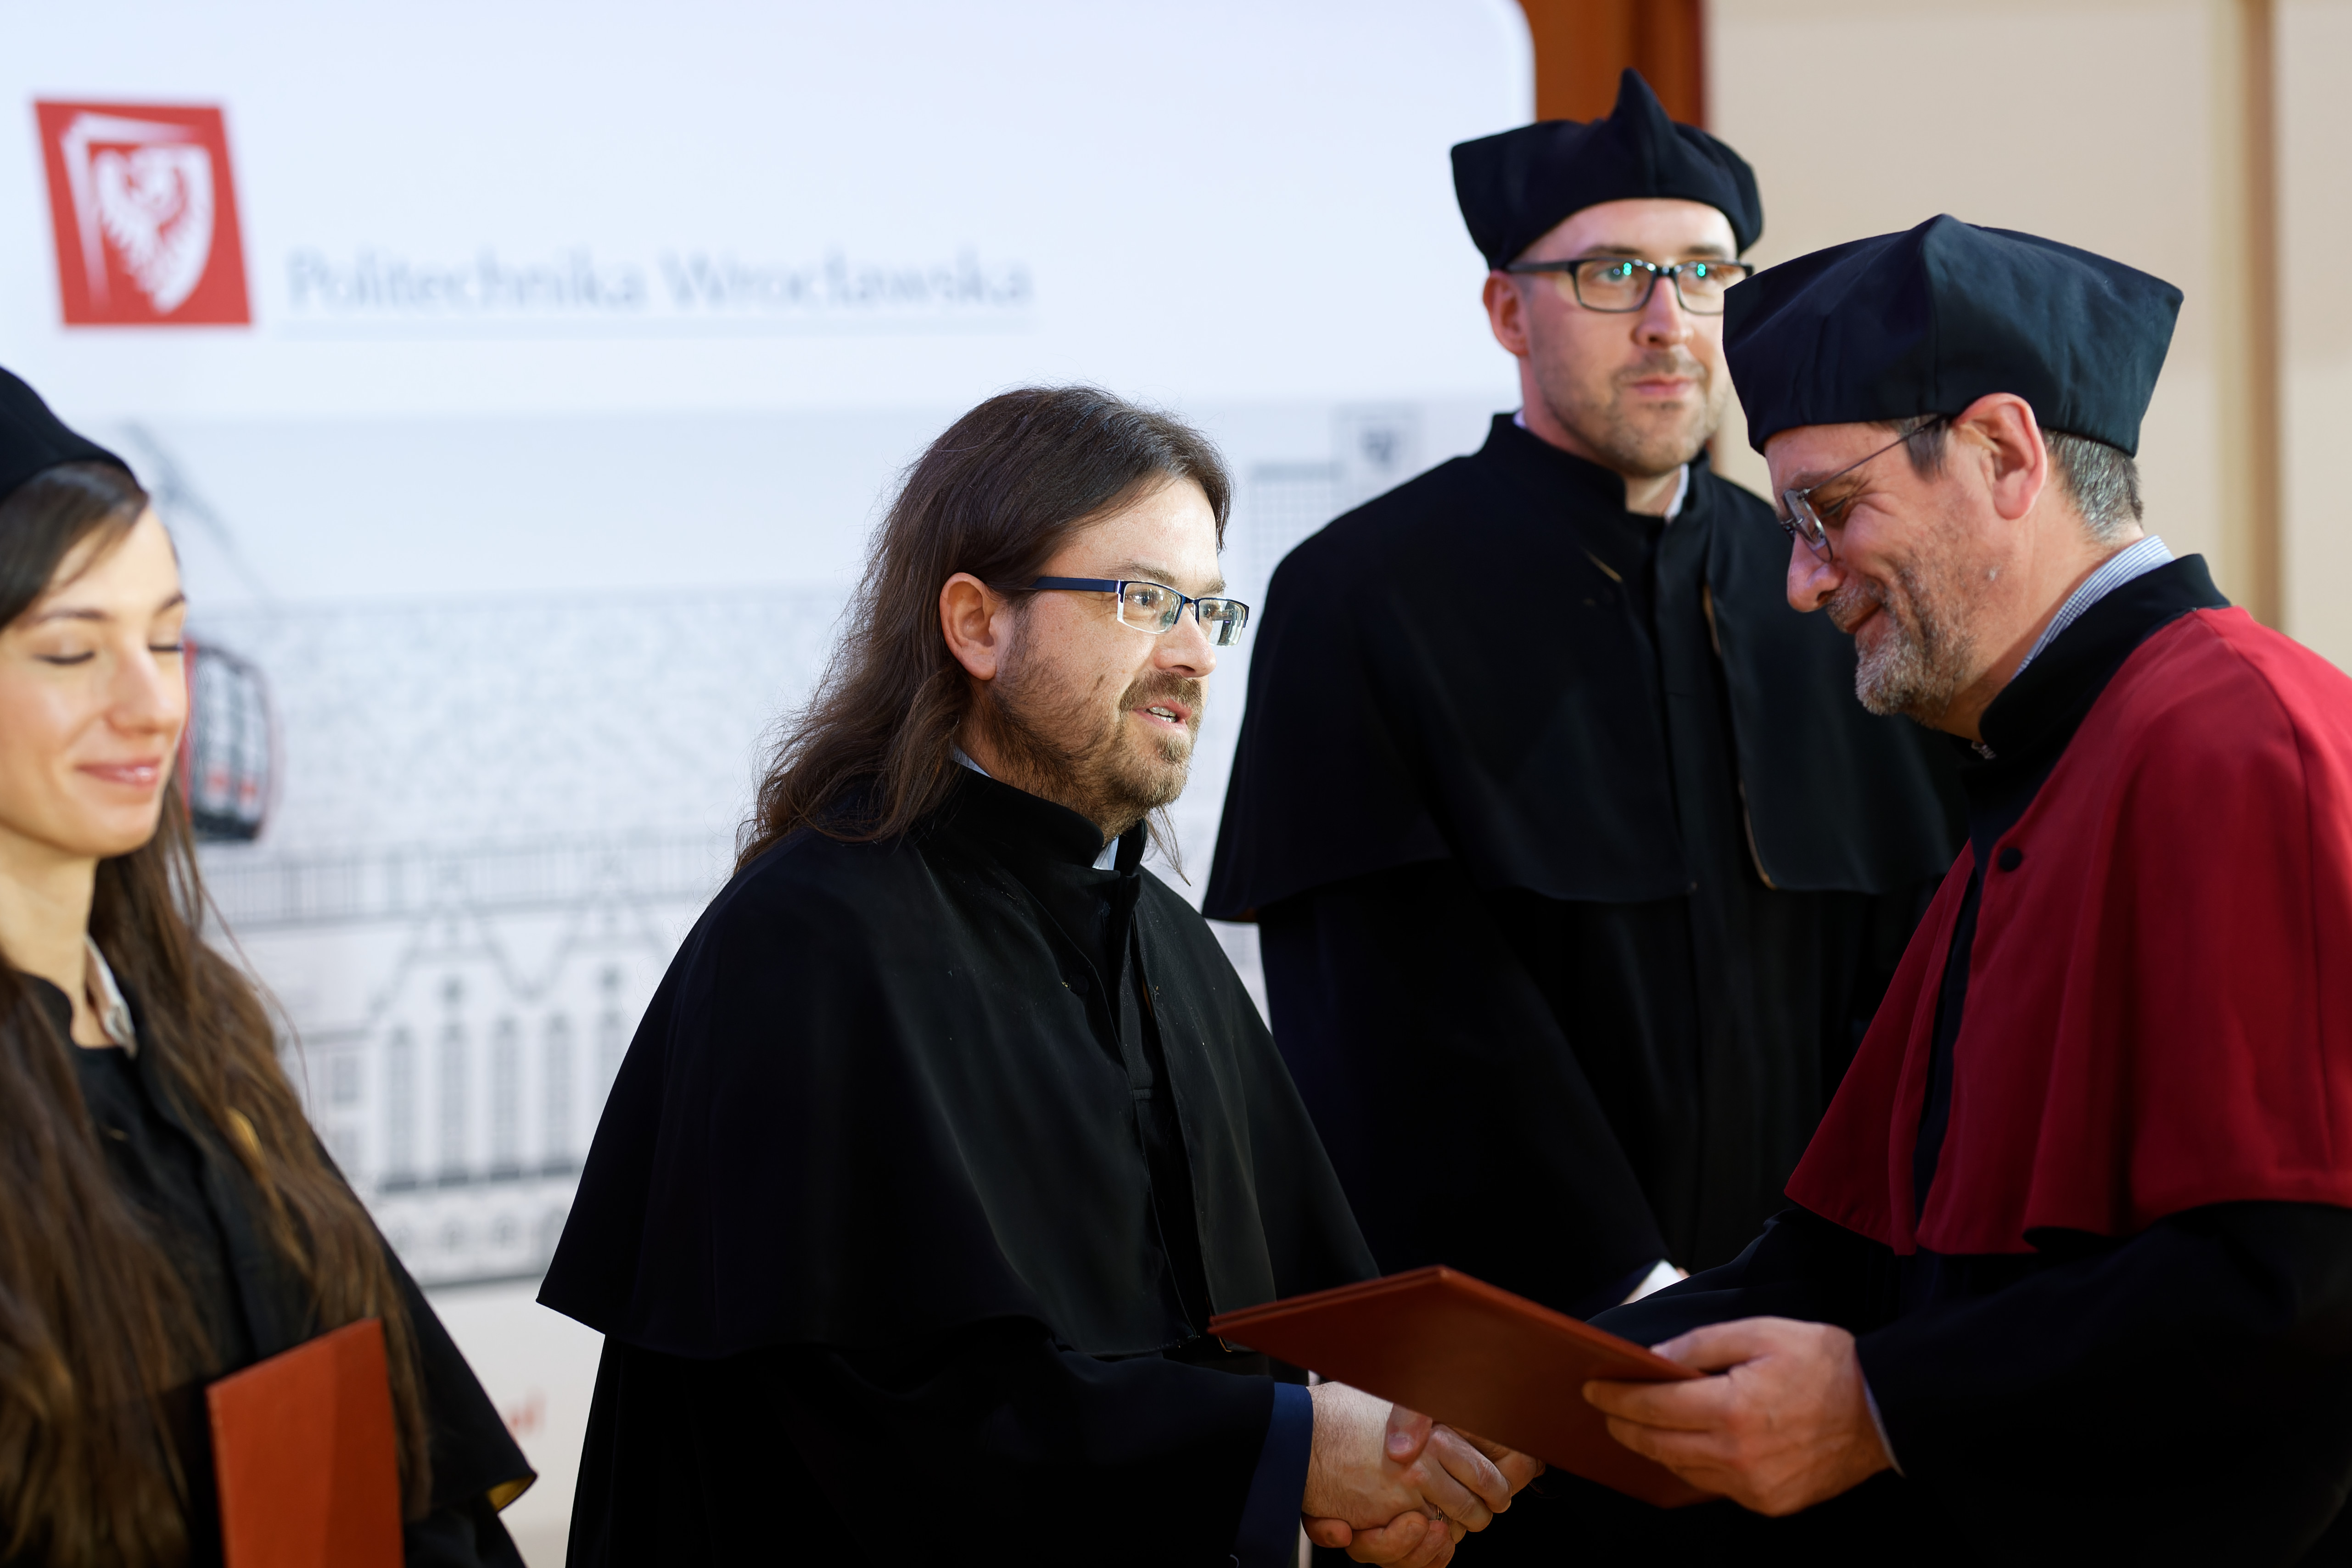 Prorektor do spraw nauki wręcza Mariuszowi Uchrońskiemu dyplom podczas uroczystości w auli.